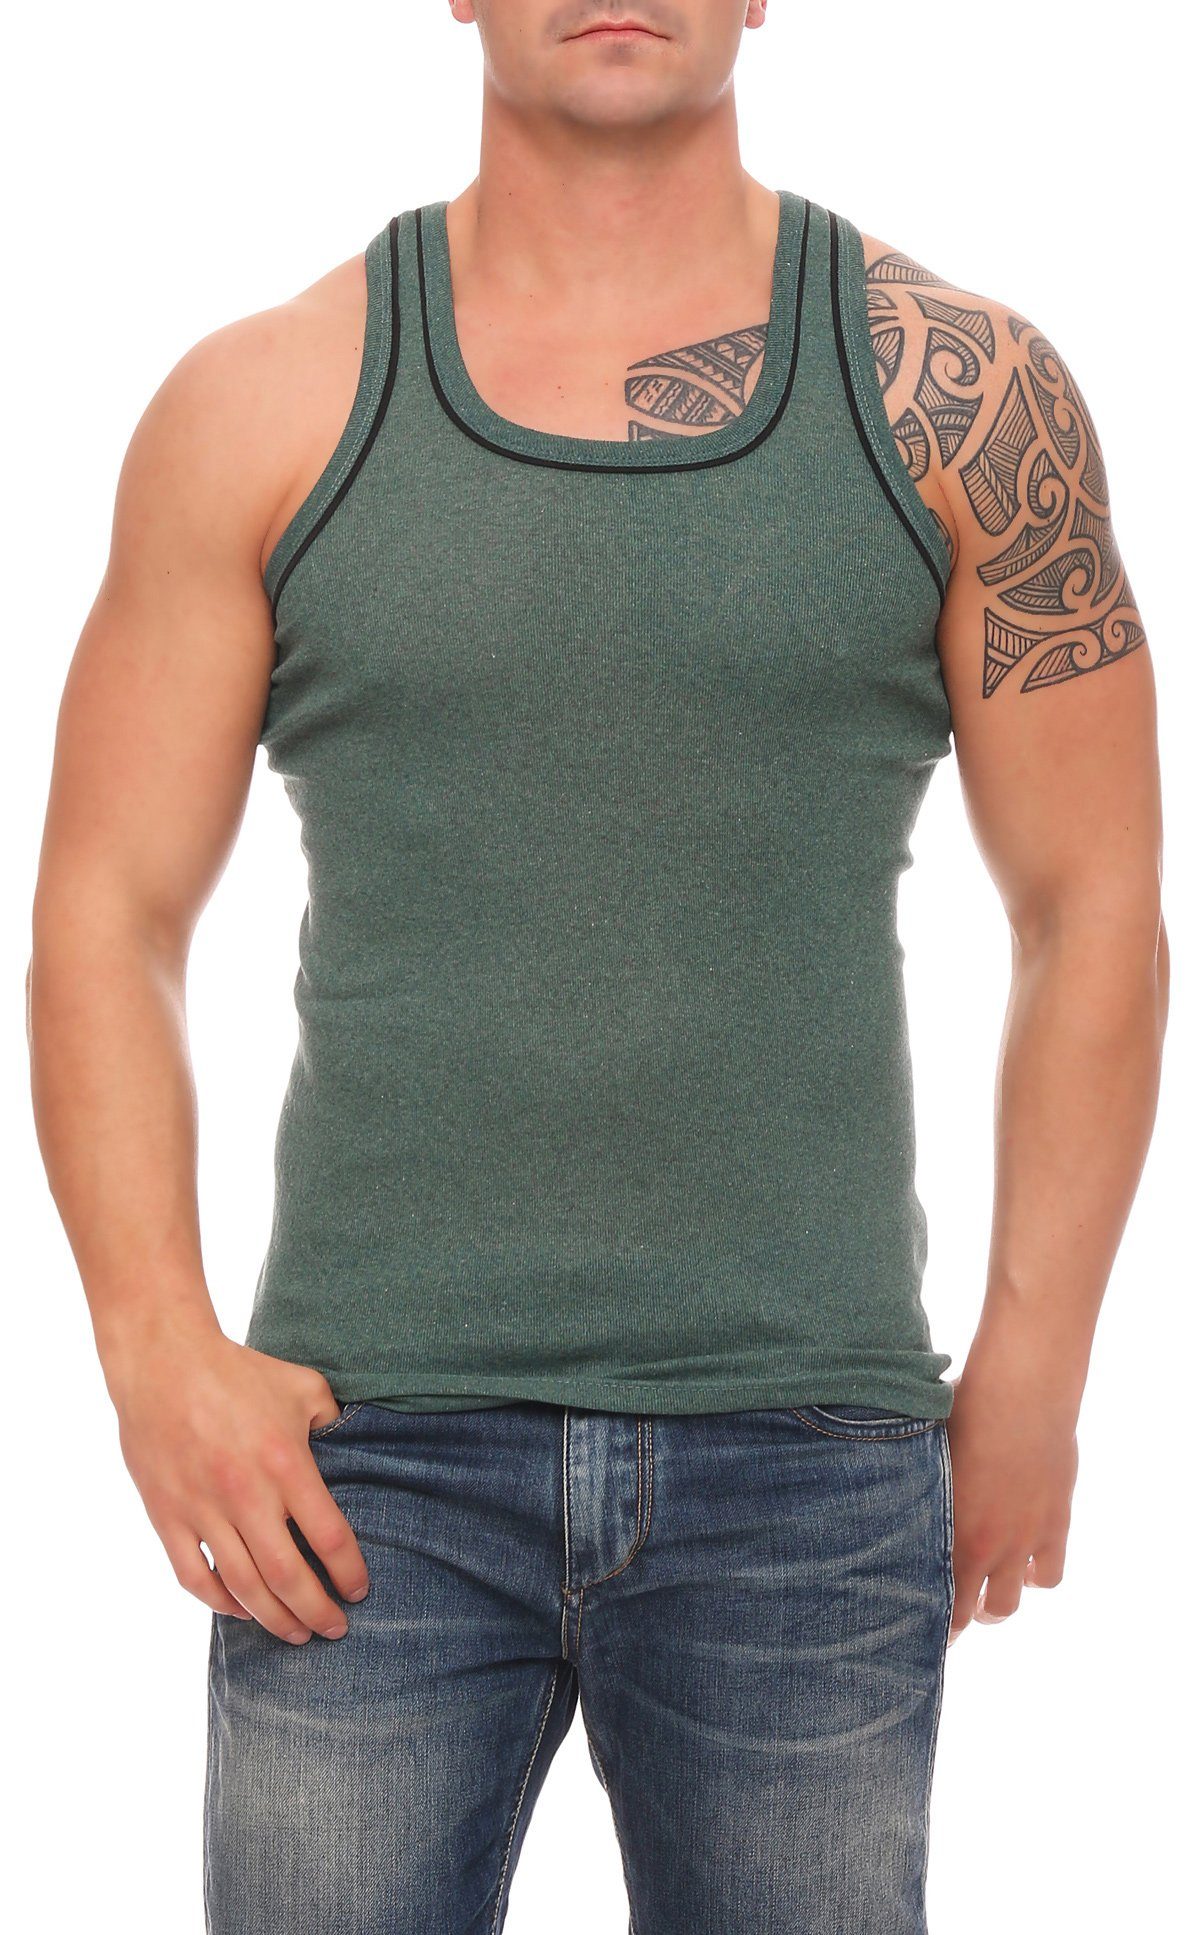 in 6x Achselhemden grau-bordeaux-hellblau-dunkelblau-grün Herren Unterhemd (6-St) underwear Cocain Europa Vollachsel produziert Unterhemden